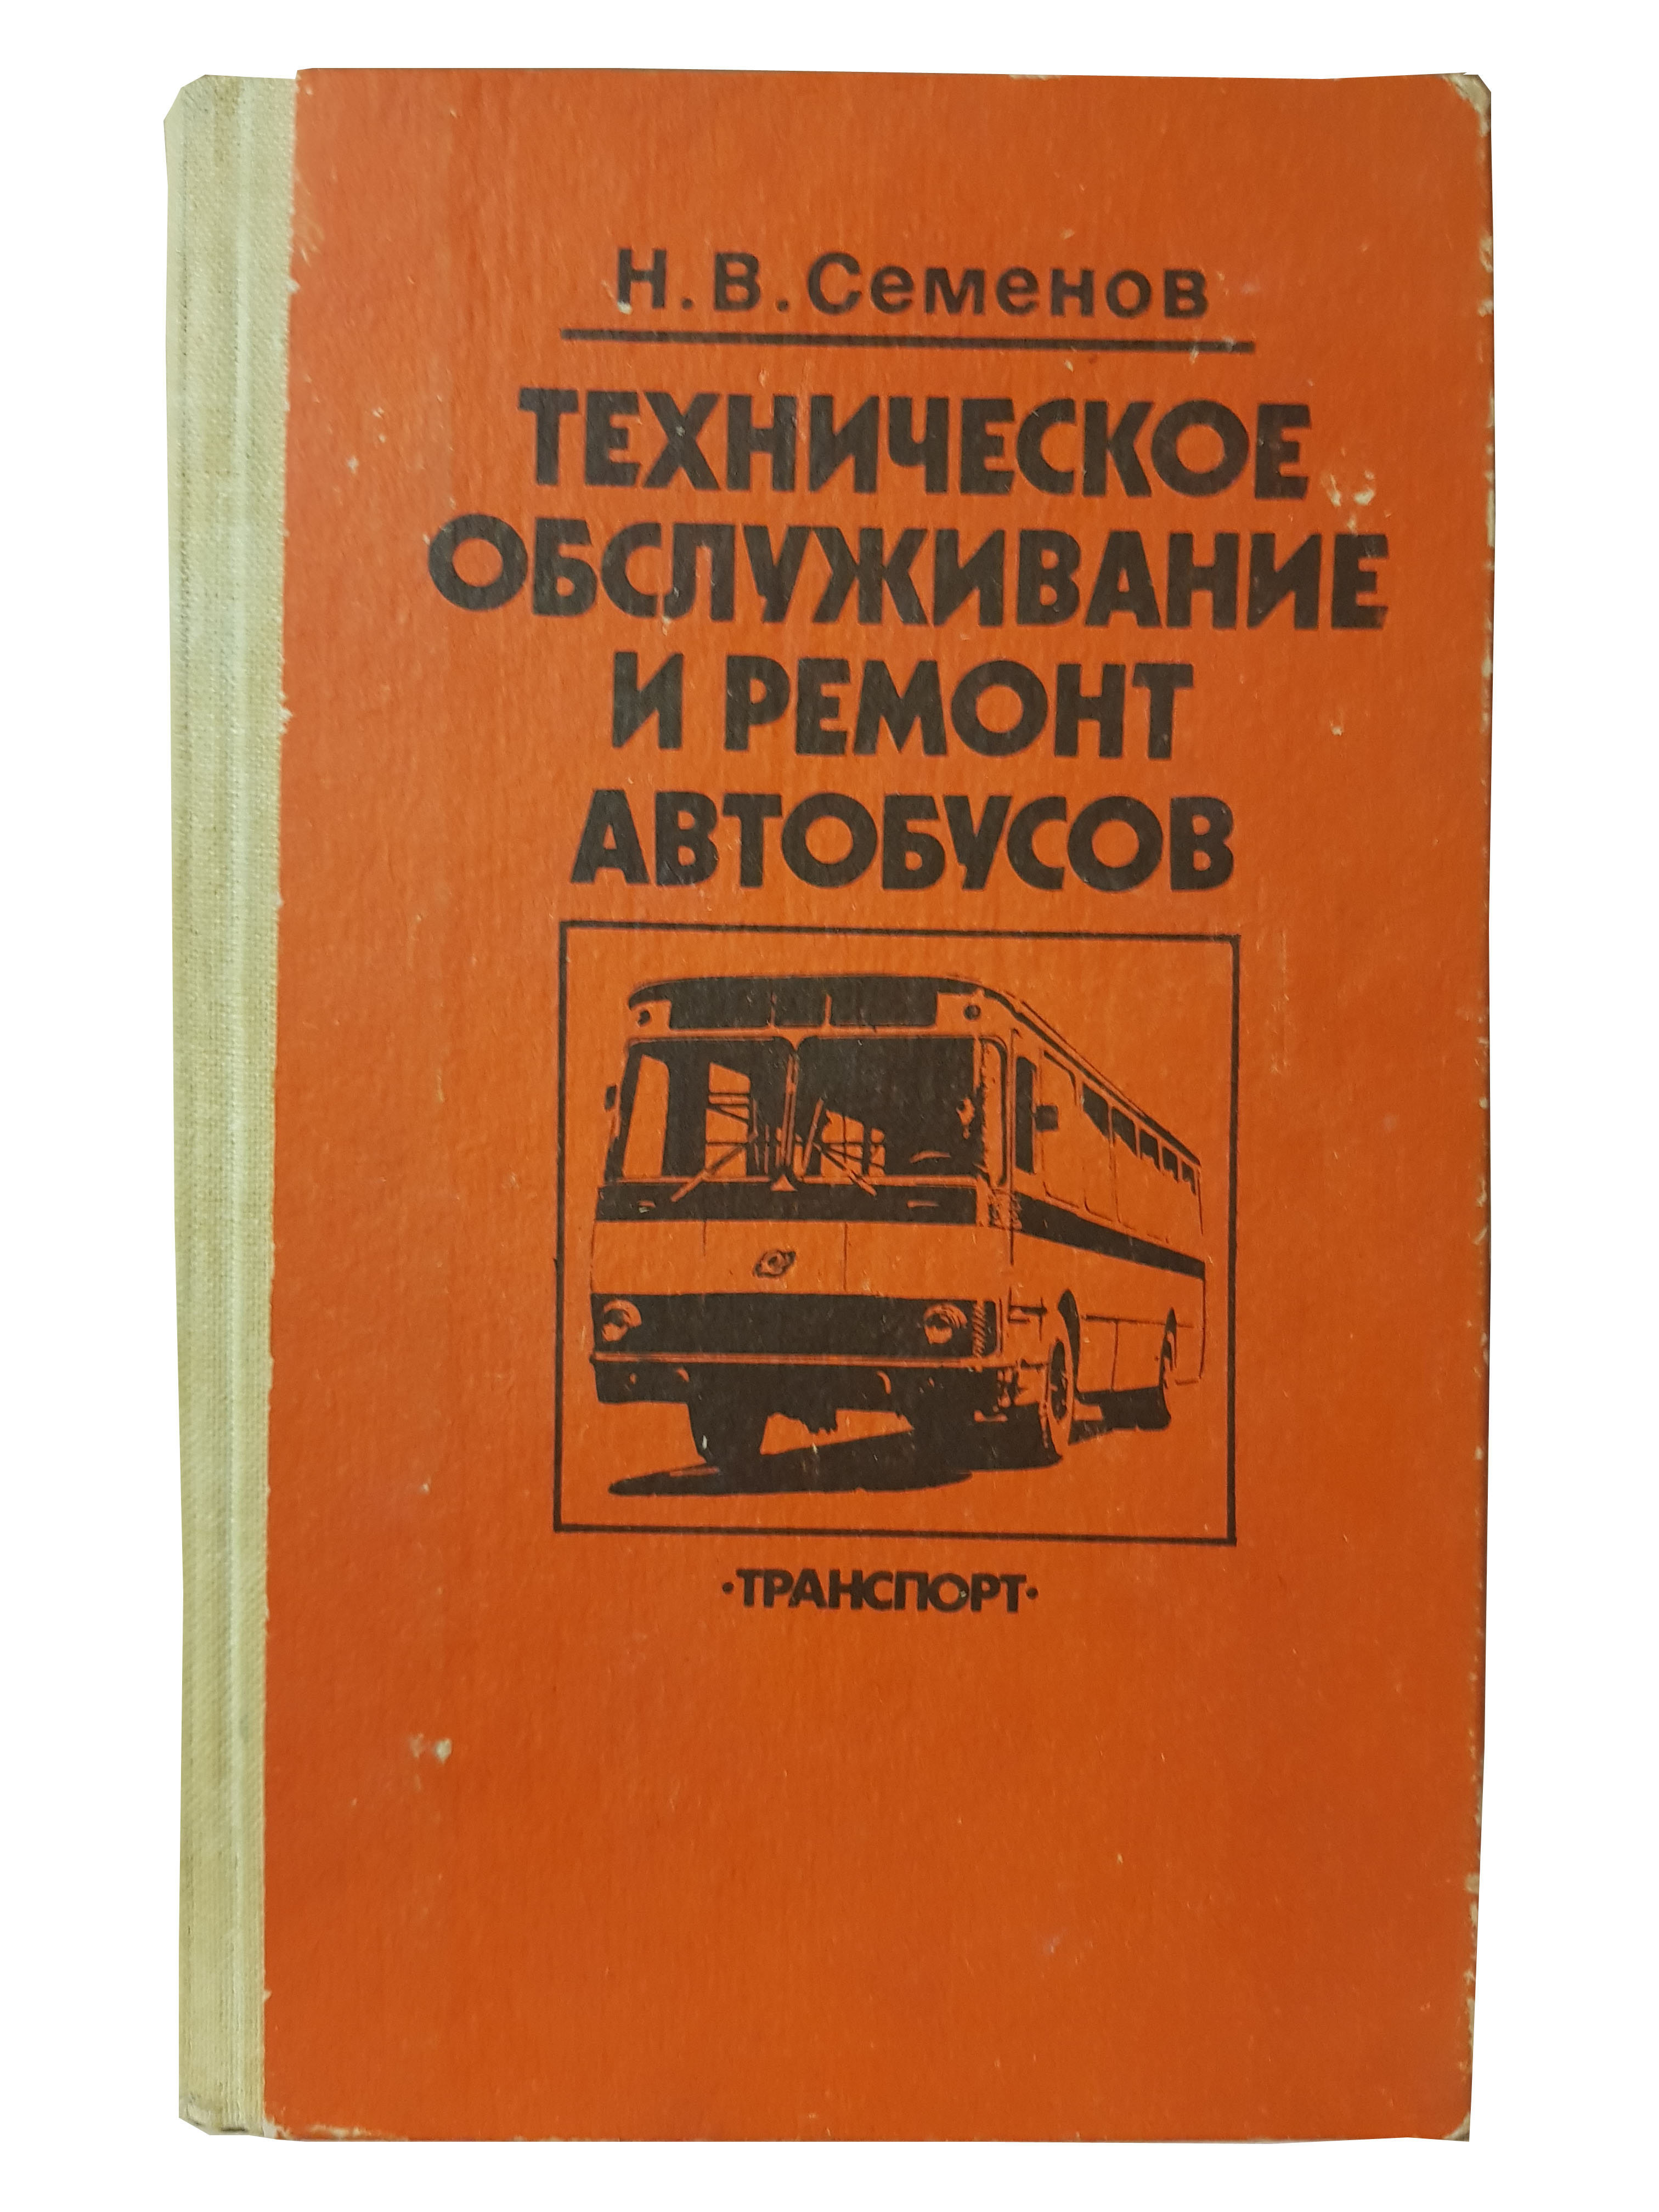 Семенов Н.В. (Техническое обслуживание и ремонт автобусов).jpg